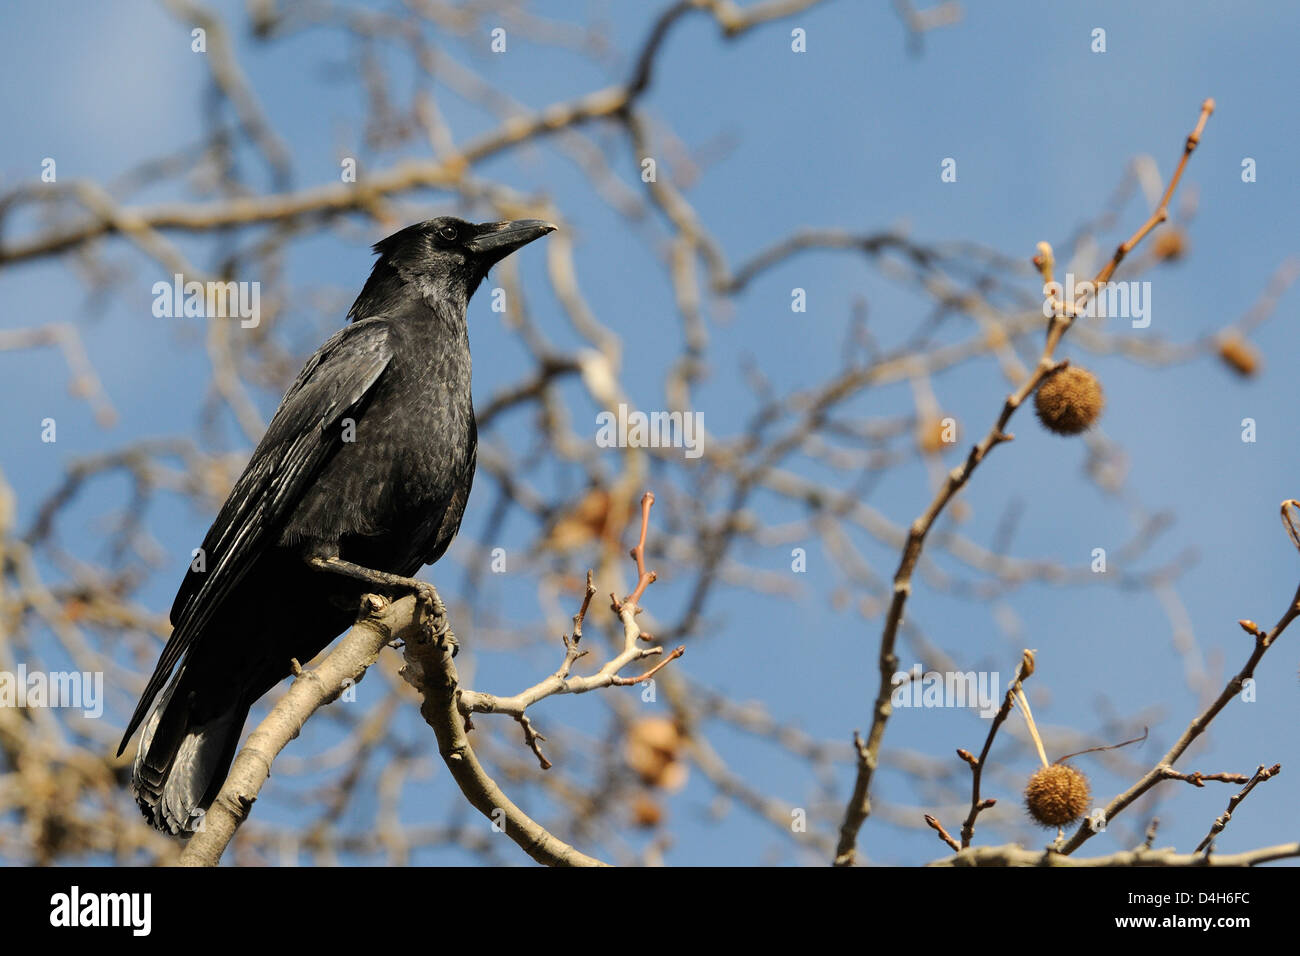 Corneille noire (Corvus corone) perché sur une branche du platane de Londres (Platanus x hispanica), Regents Park, London, England, UK Banque D'Images